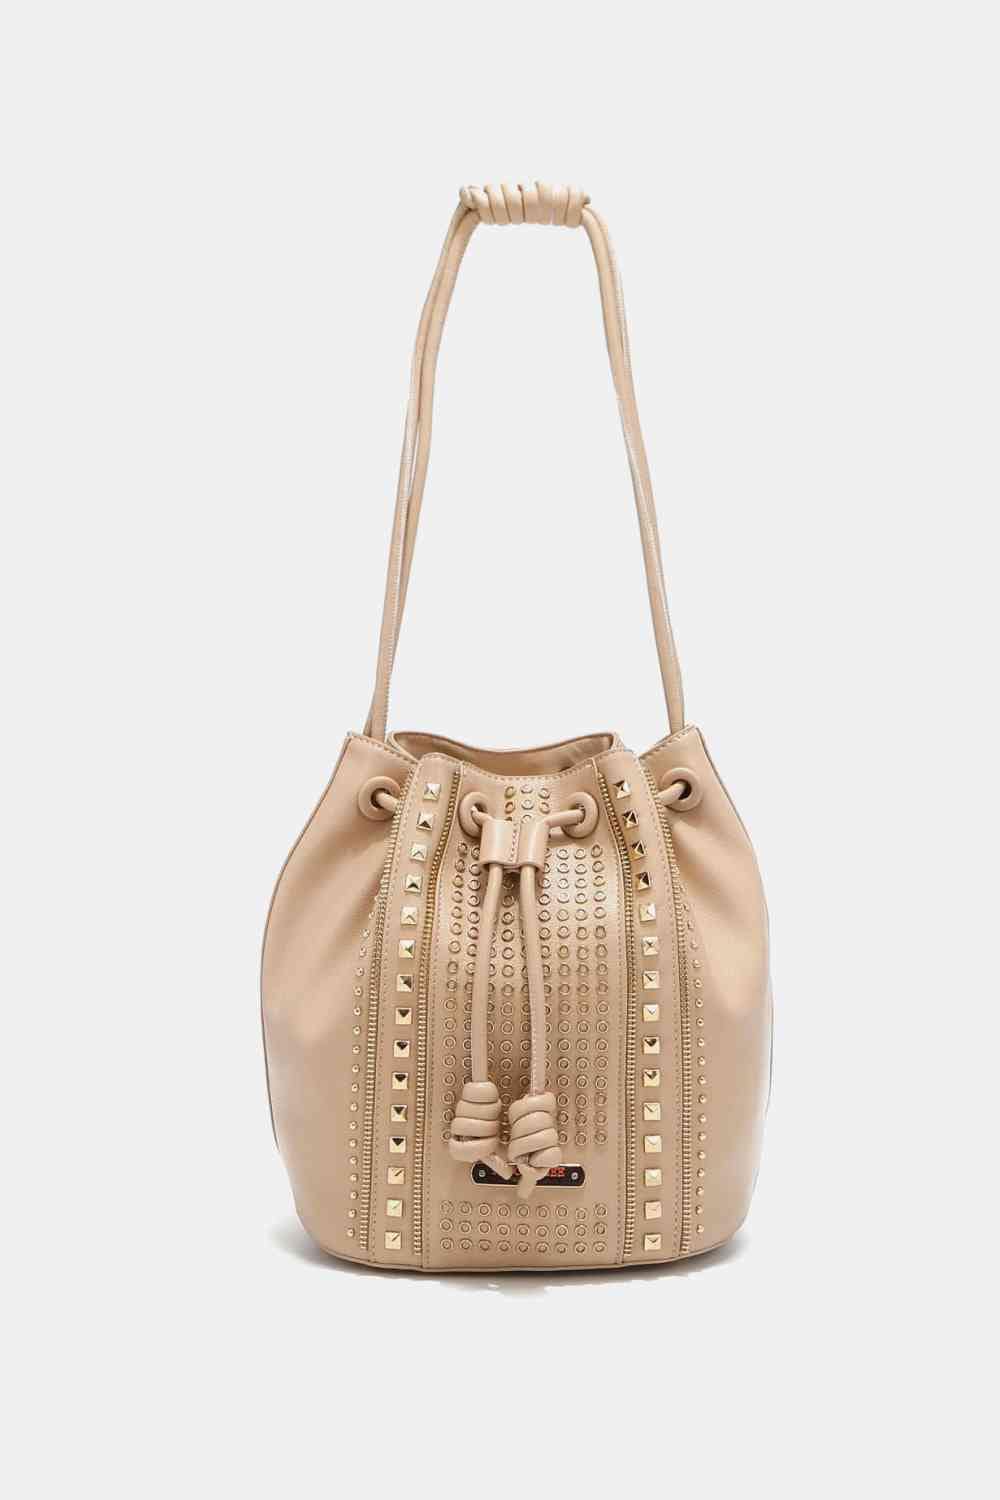 Nicole Lee USA Amy Studded Bucket Bag Beige / One Size